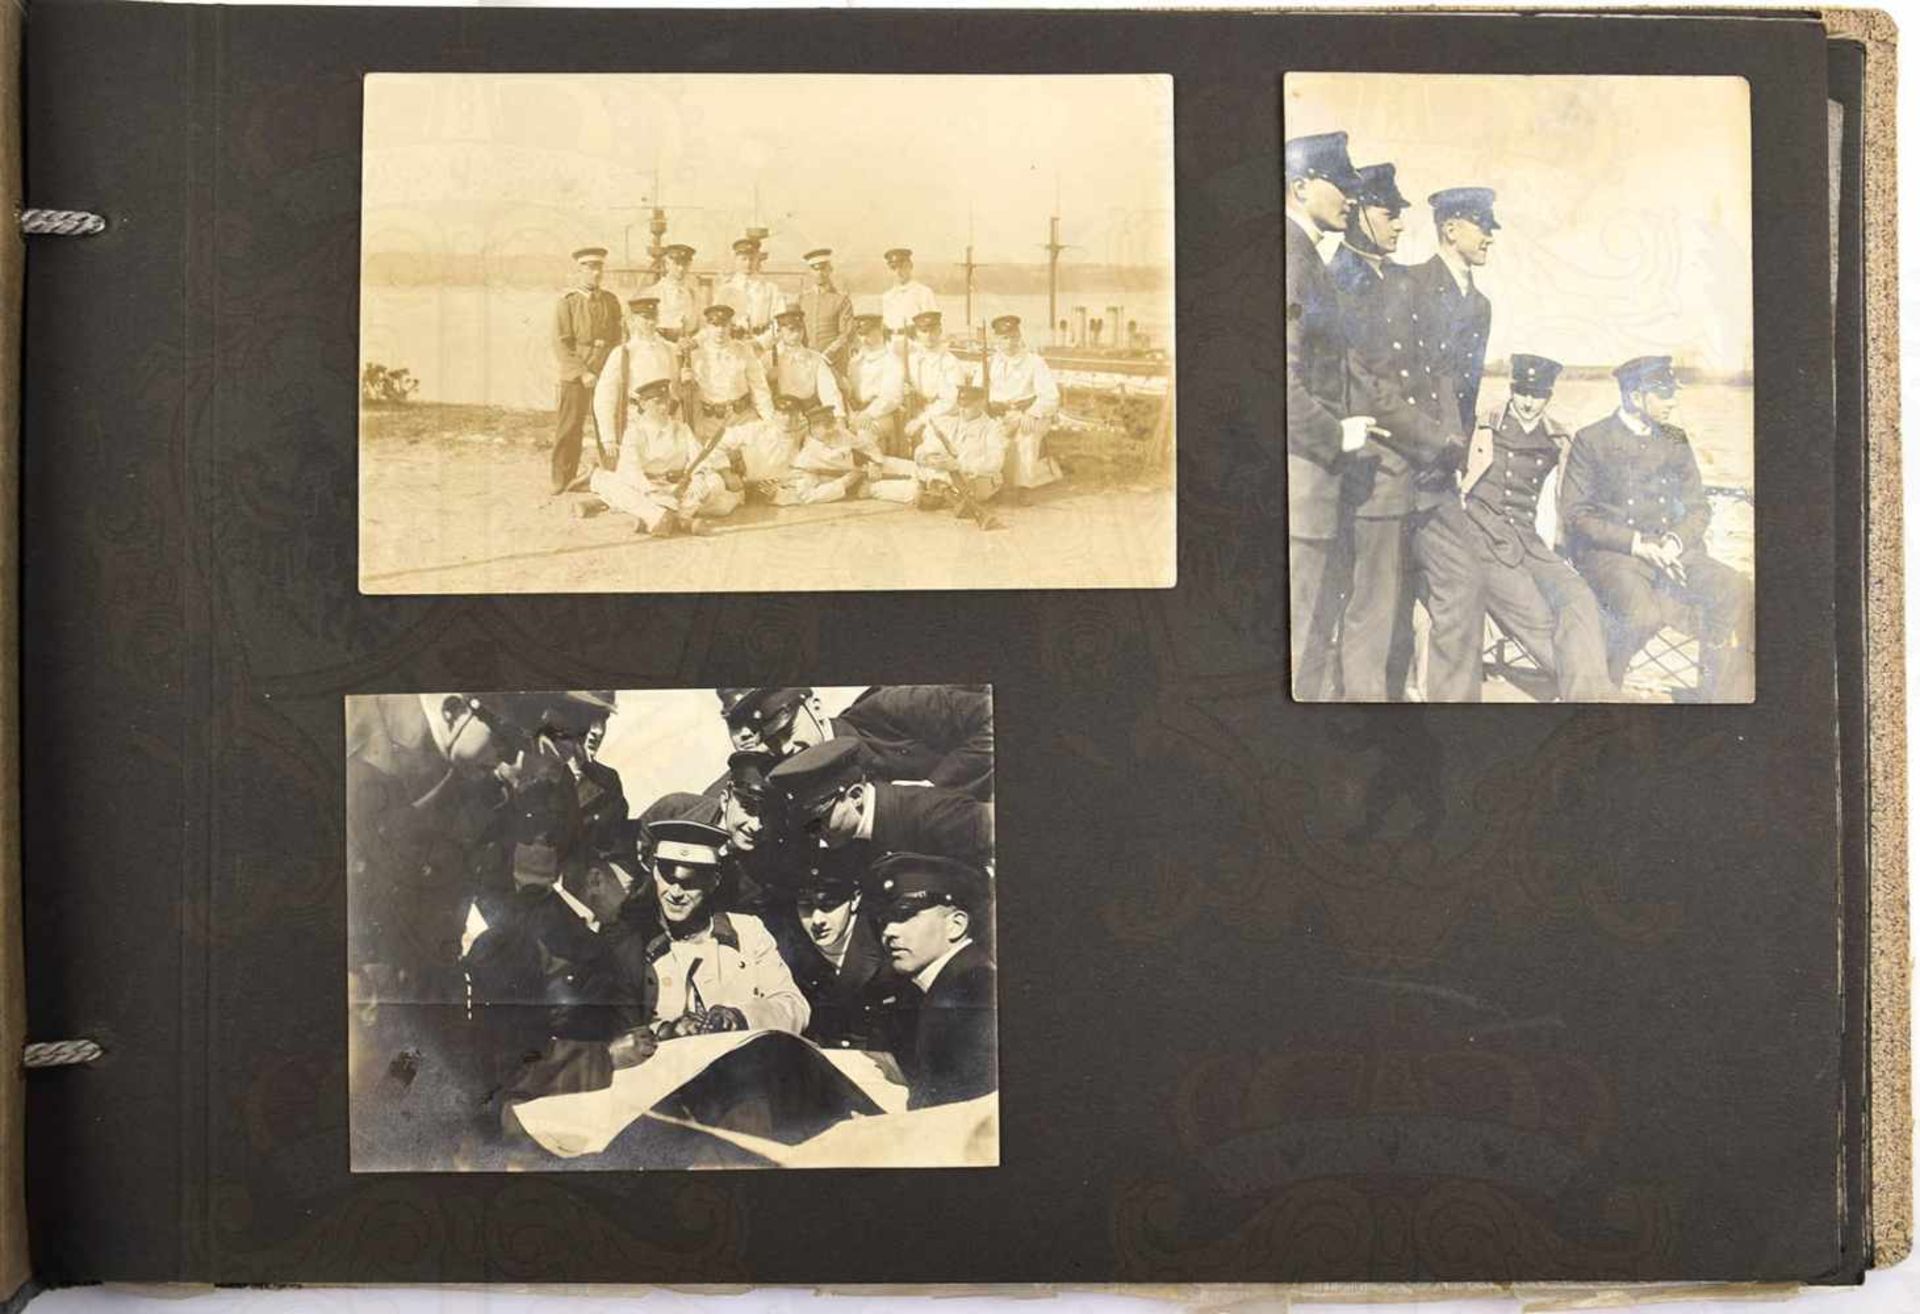 FOTOALBUM mit 50 Aufnahmen, davon 35 Kaiserliche Marine bzw. Reichsmarine u. 11 Fotos/AK Reichswehr,